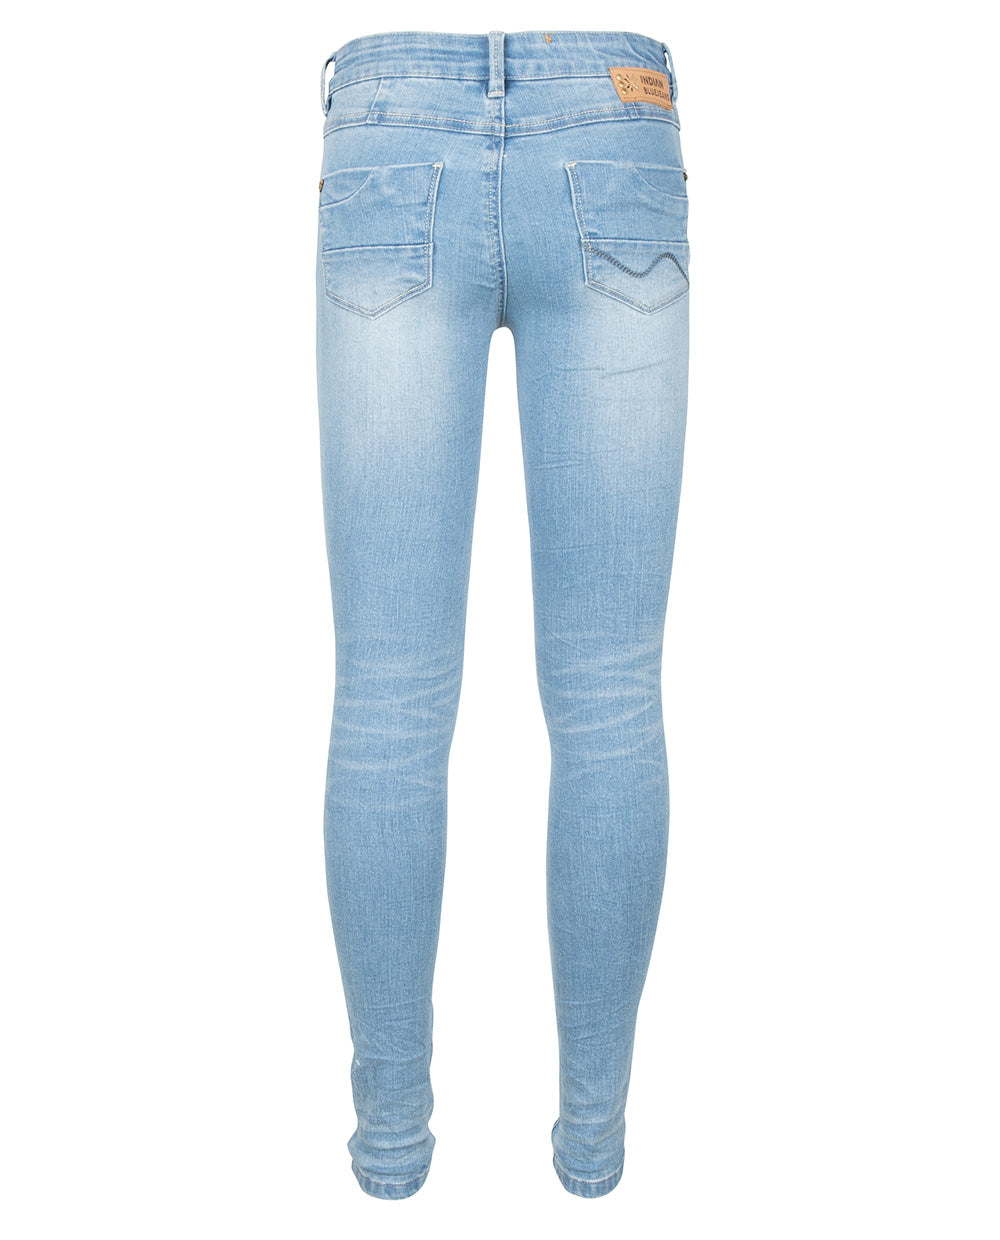 Meisjes Blue Jill Flex Skinny Fit van Indian Blue Jeans in de kleur Medium Denim in maat 176.